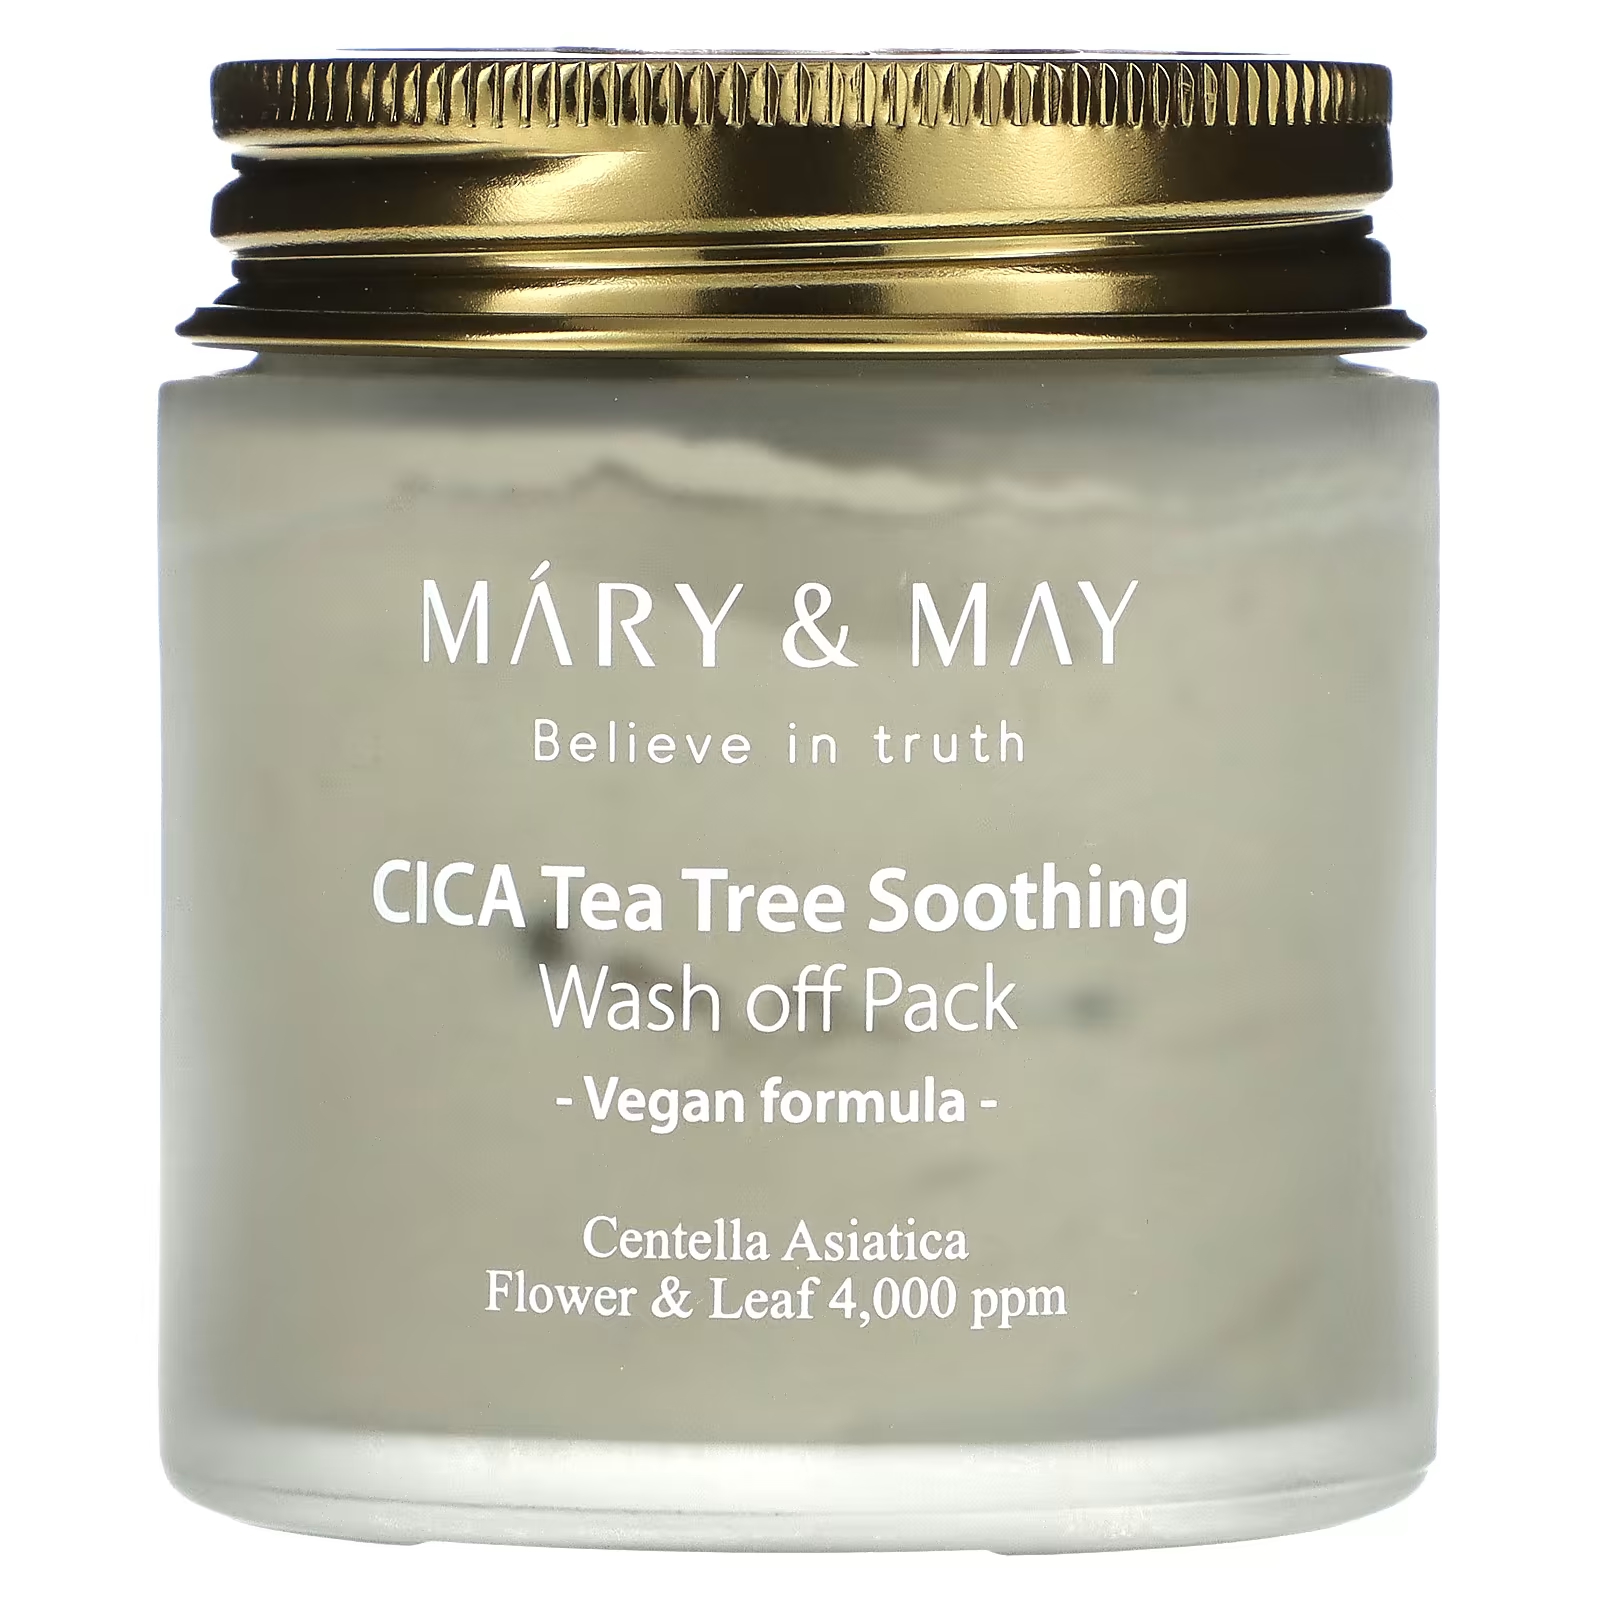 Набор масок Mary & May, чайное дерево CICA Soothing набор масок комплимент элегантной даме с антиэйдж эффектом